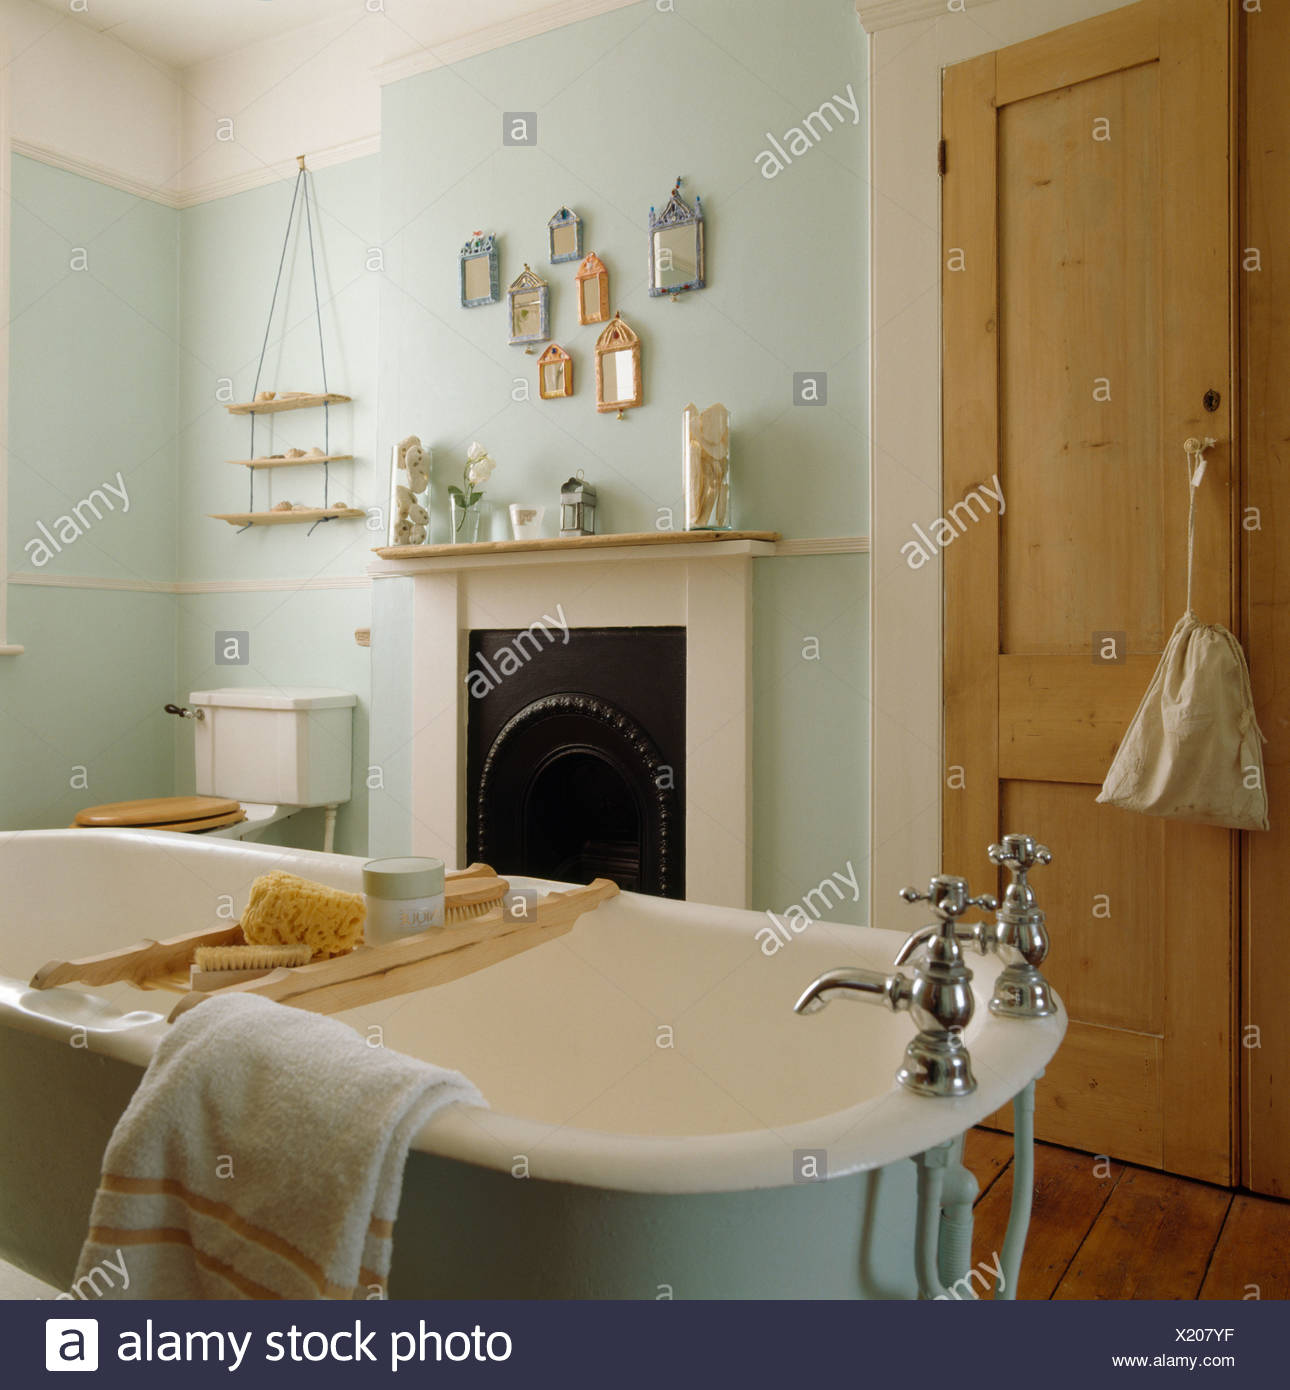 https www alamyimages fr une baignoire en bois avec baignoire rack en vert pale salle de bains avec placard et pin blanc petite cheminee image276601459 html